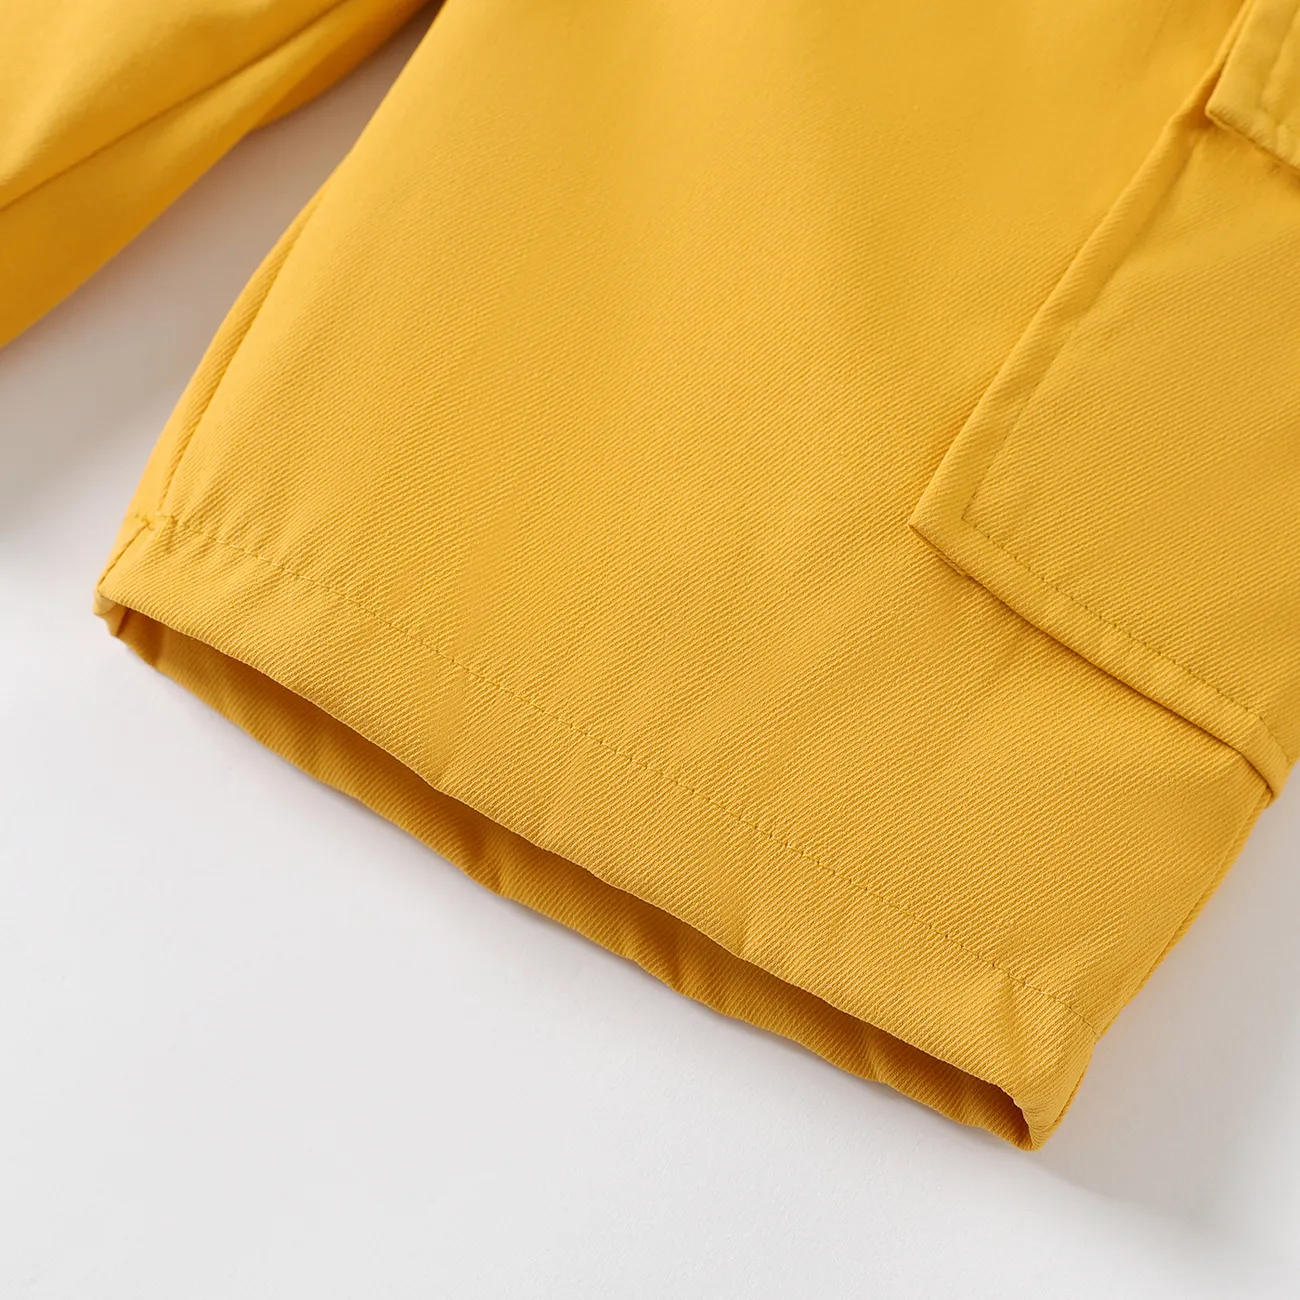 shorts elásticos de design de bolso de cor sólida menino garoto Amarelo big image 1